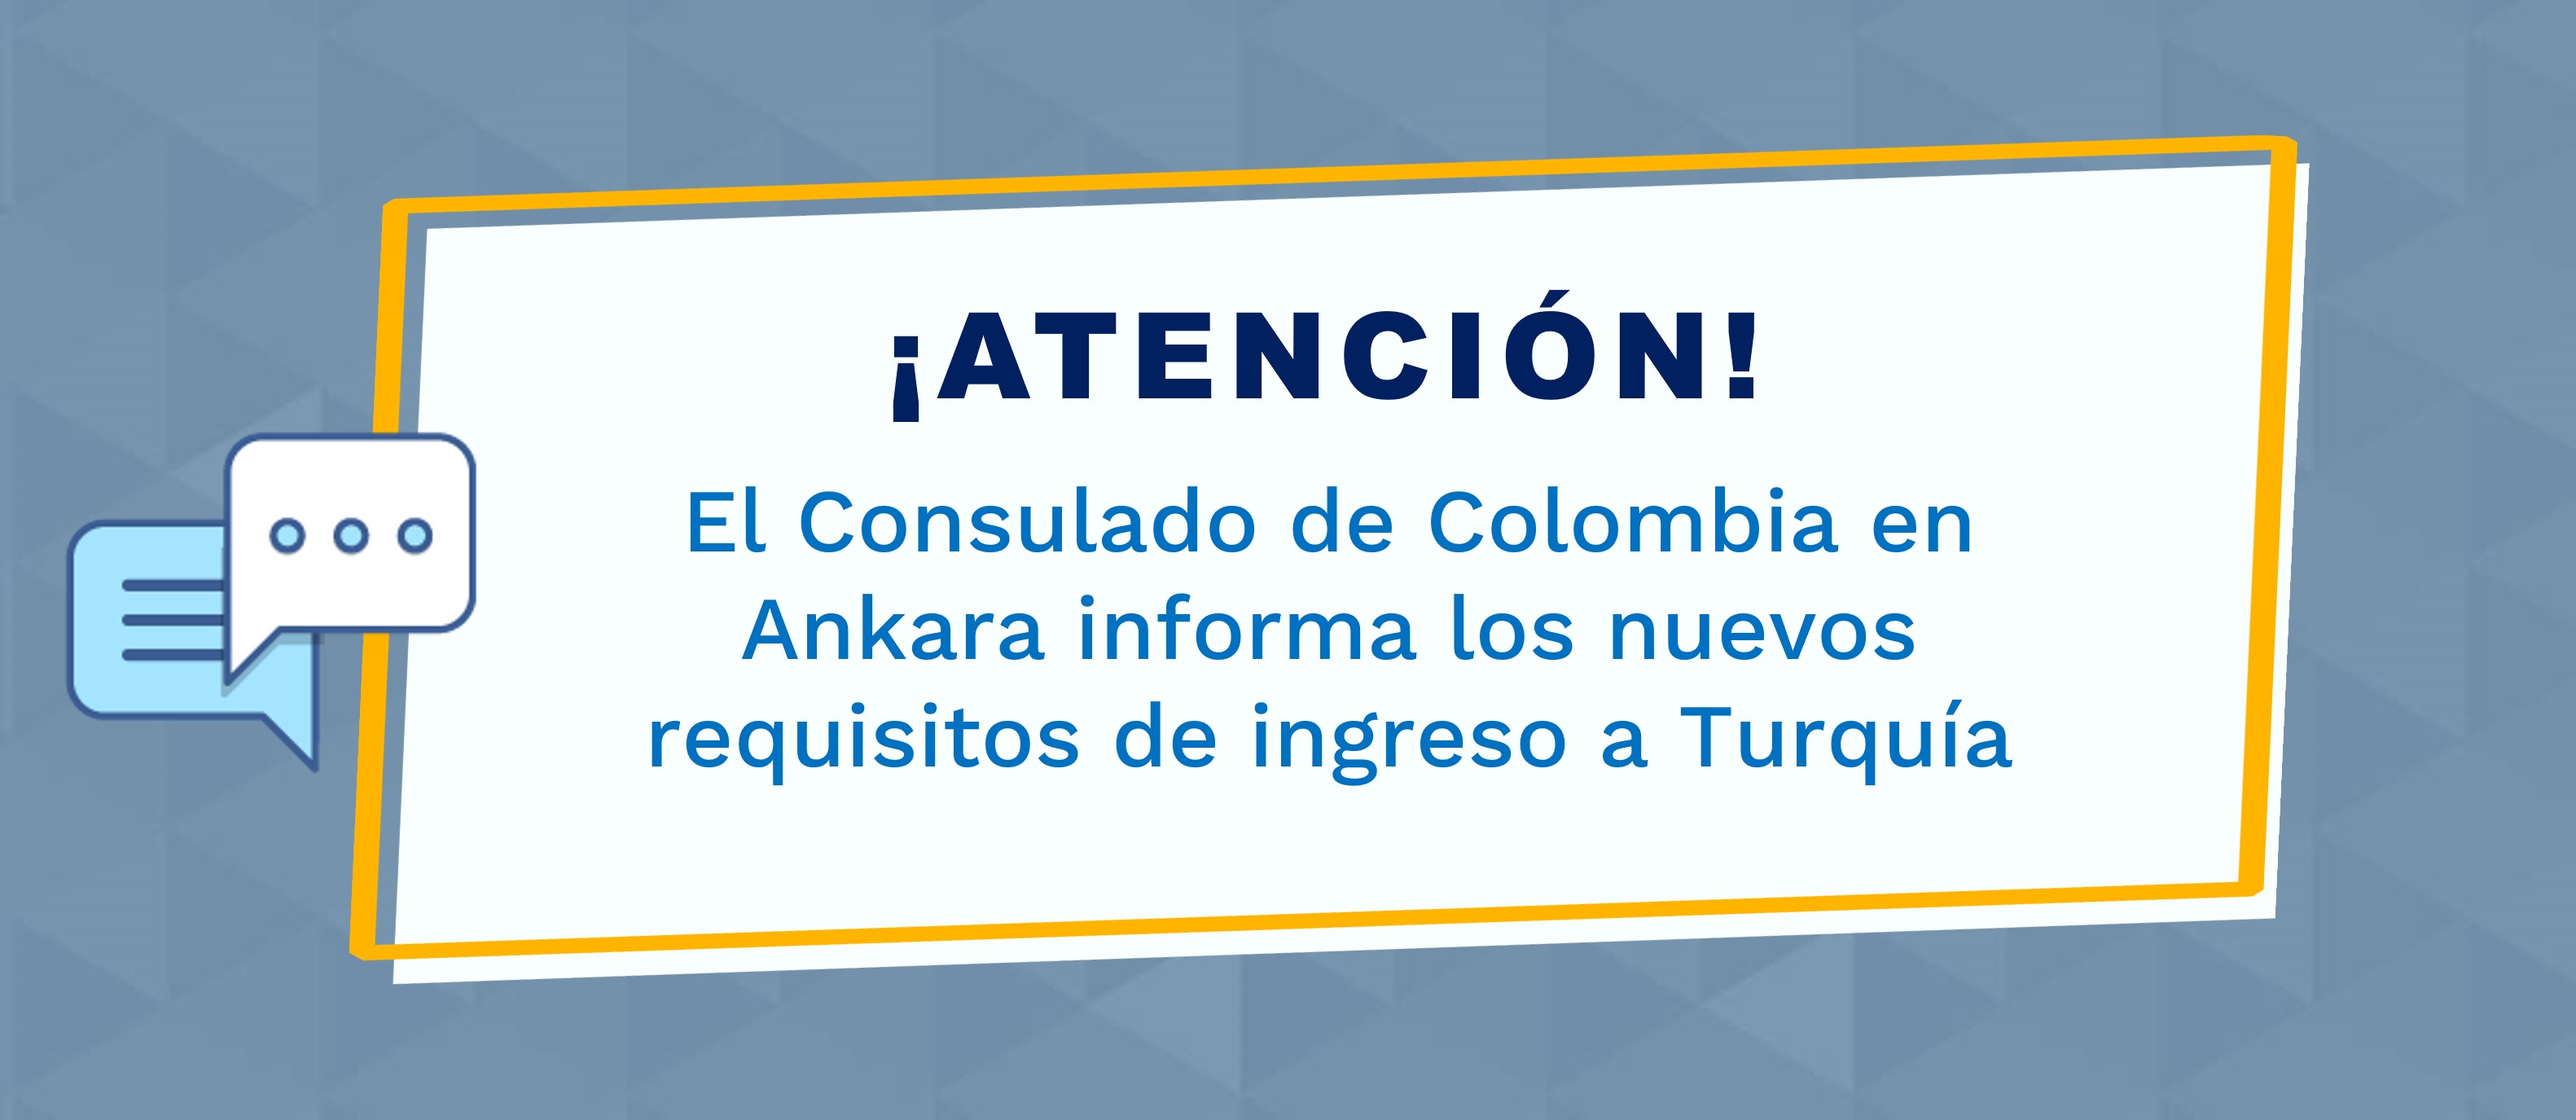 El Consulado de Colombia informa los nuevos requisitos de ingreso a Turquía